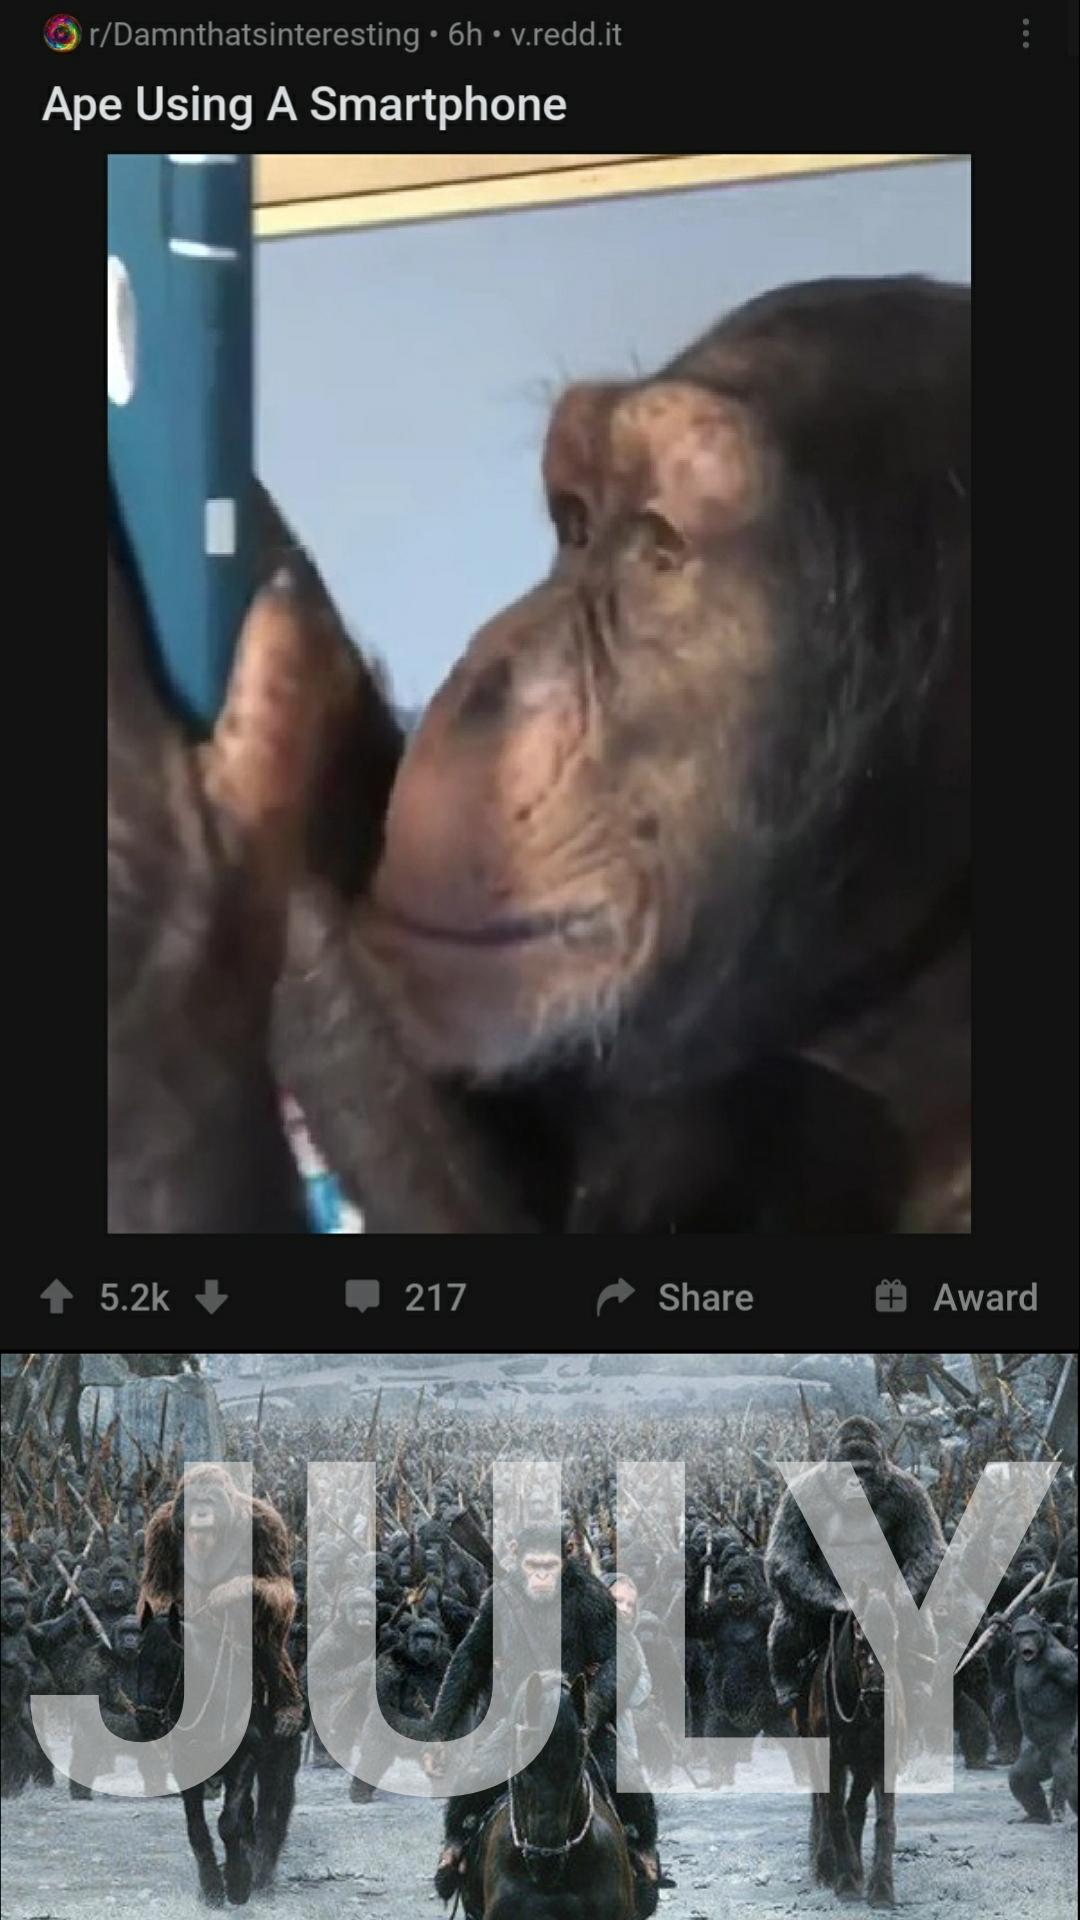 ape using smartphone meme, ape using smartphone 2020 meme